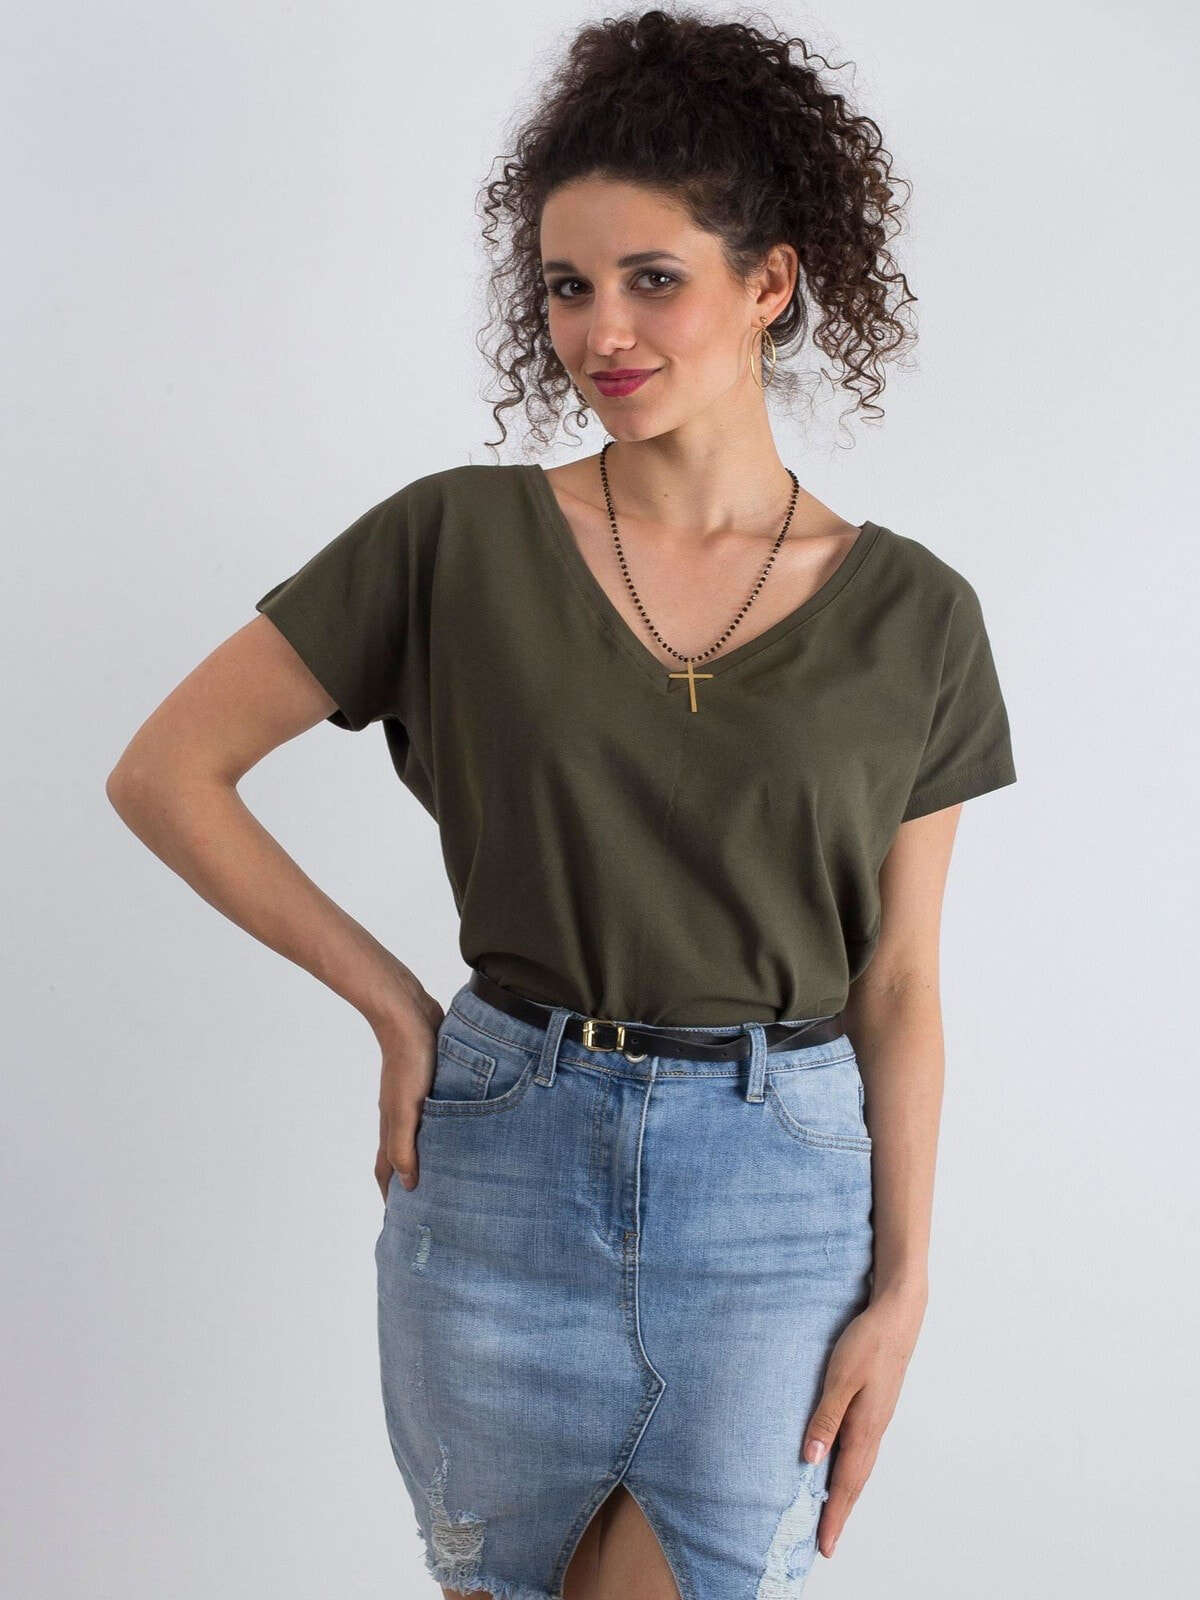 Женская футболка с V-образным вырезом цвета хаки Factory Price